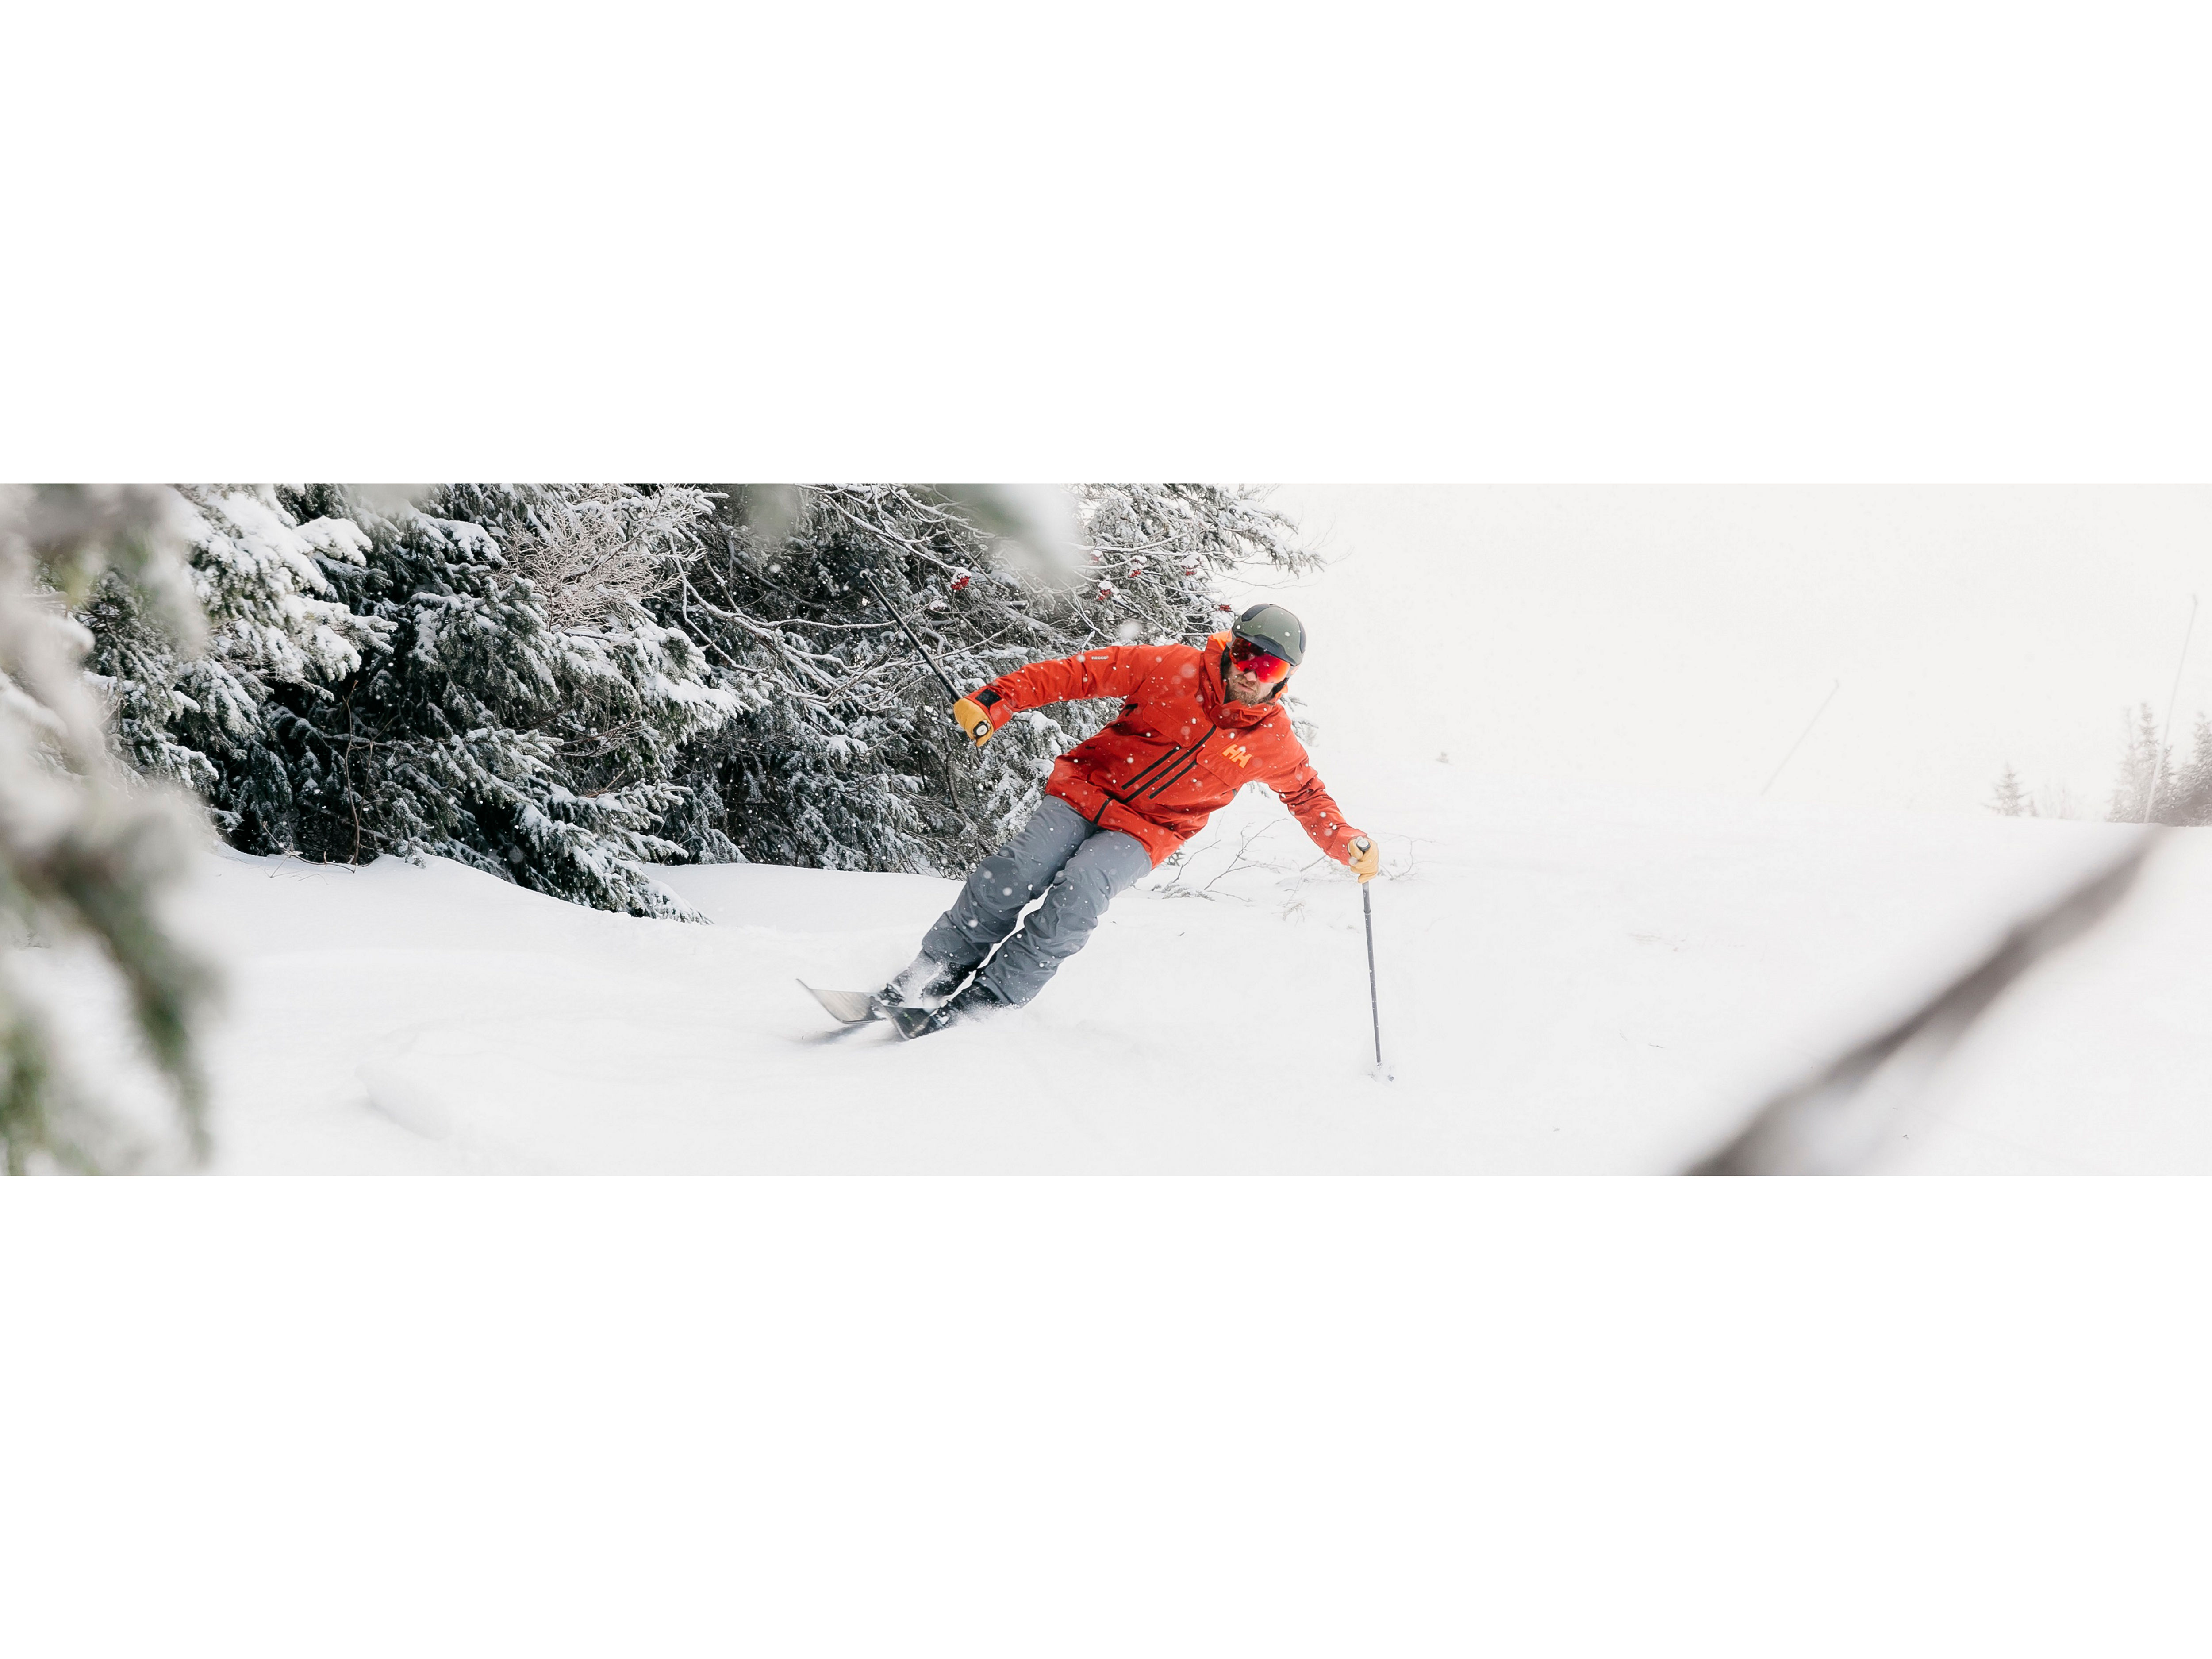 Women's Ski & Snowboard Clothes - Winter Wear Rentals